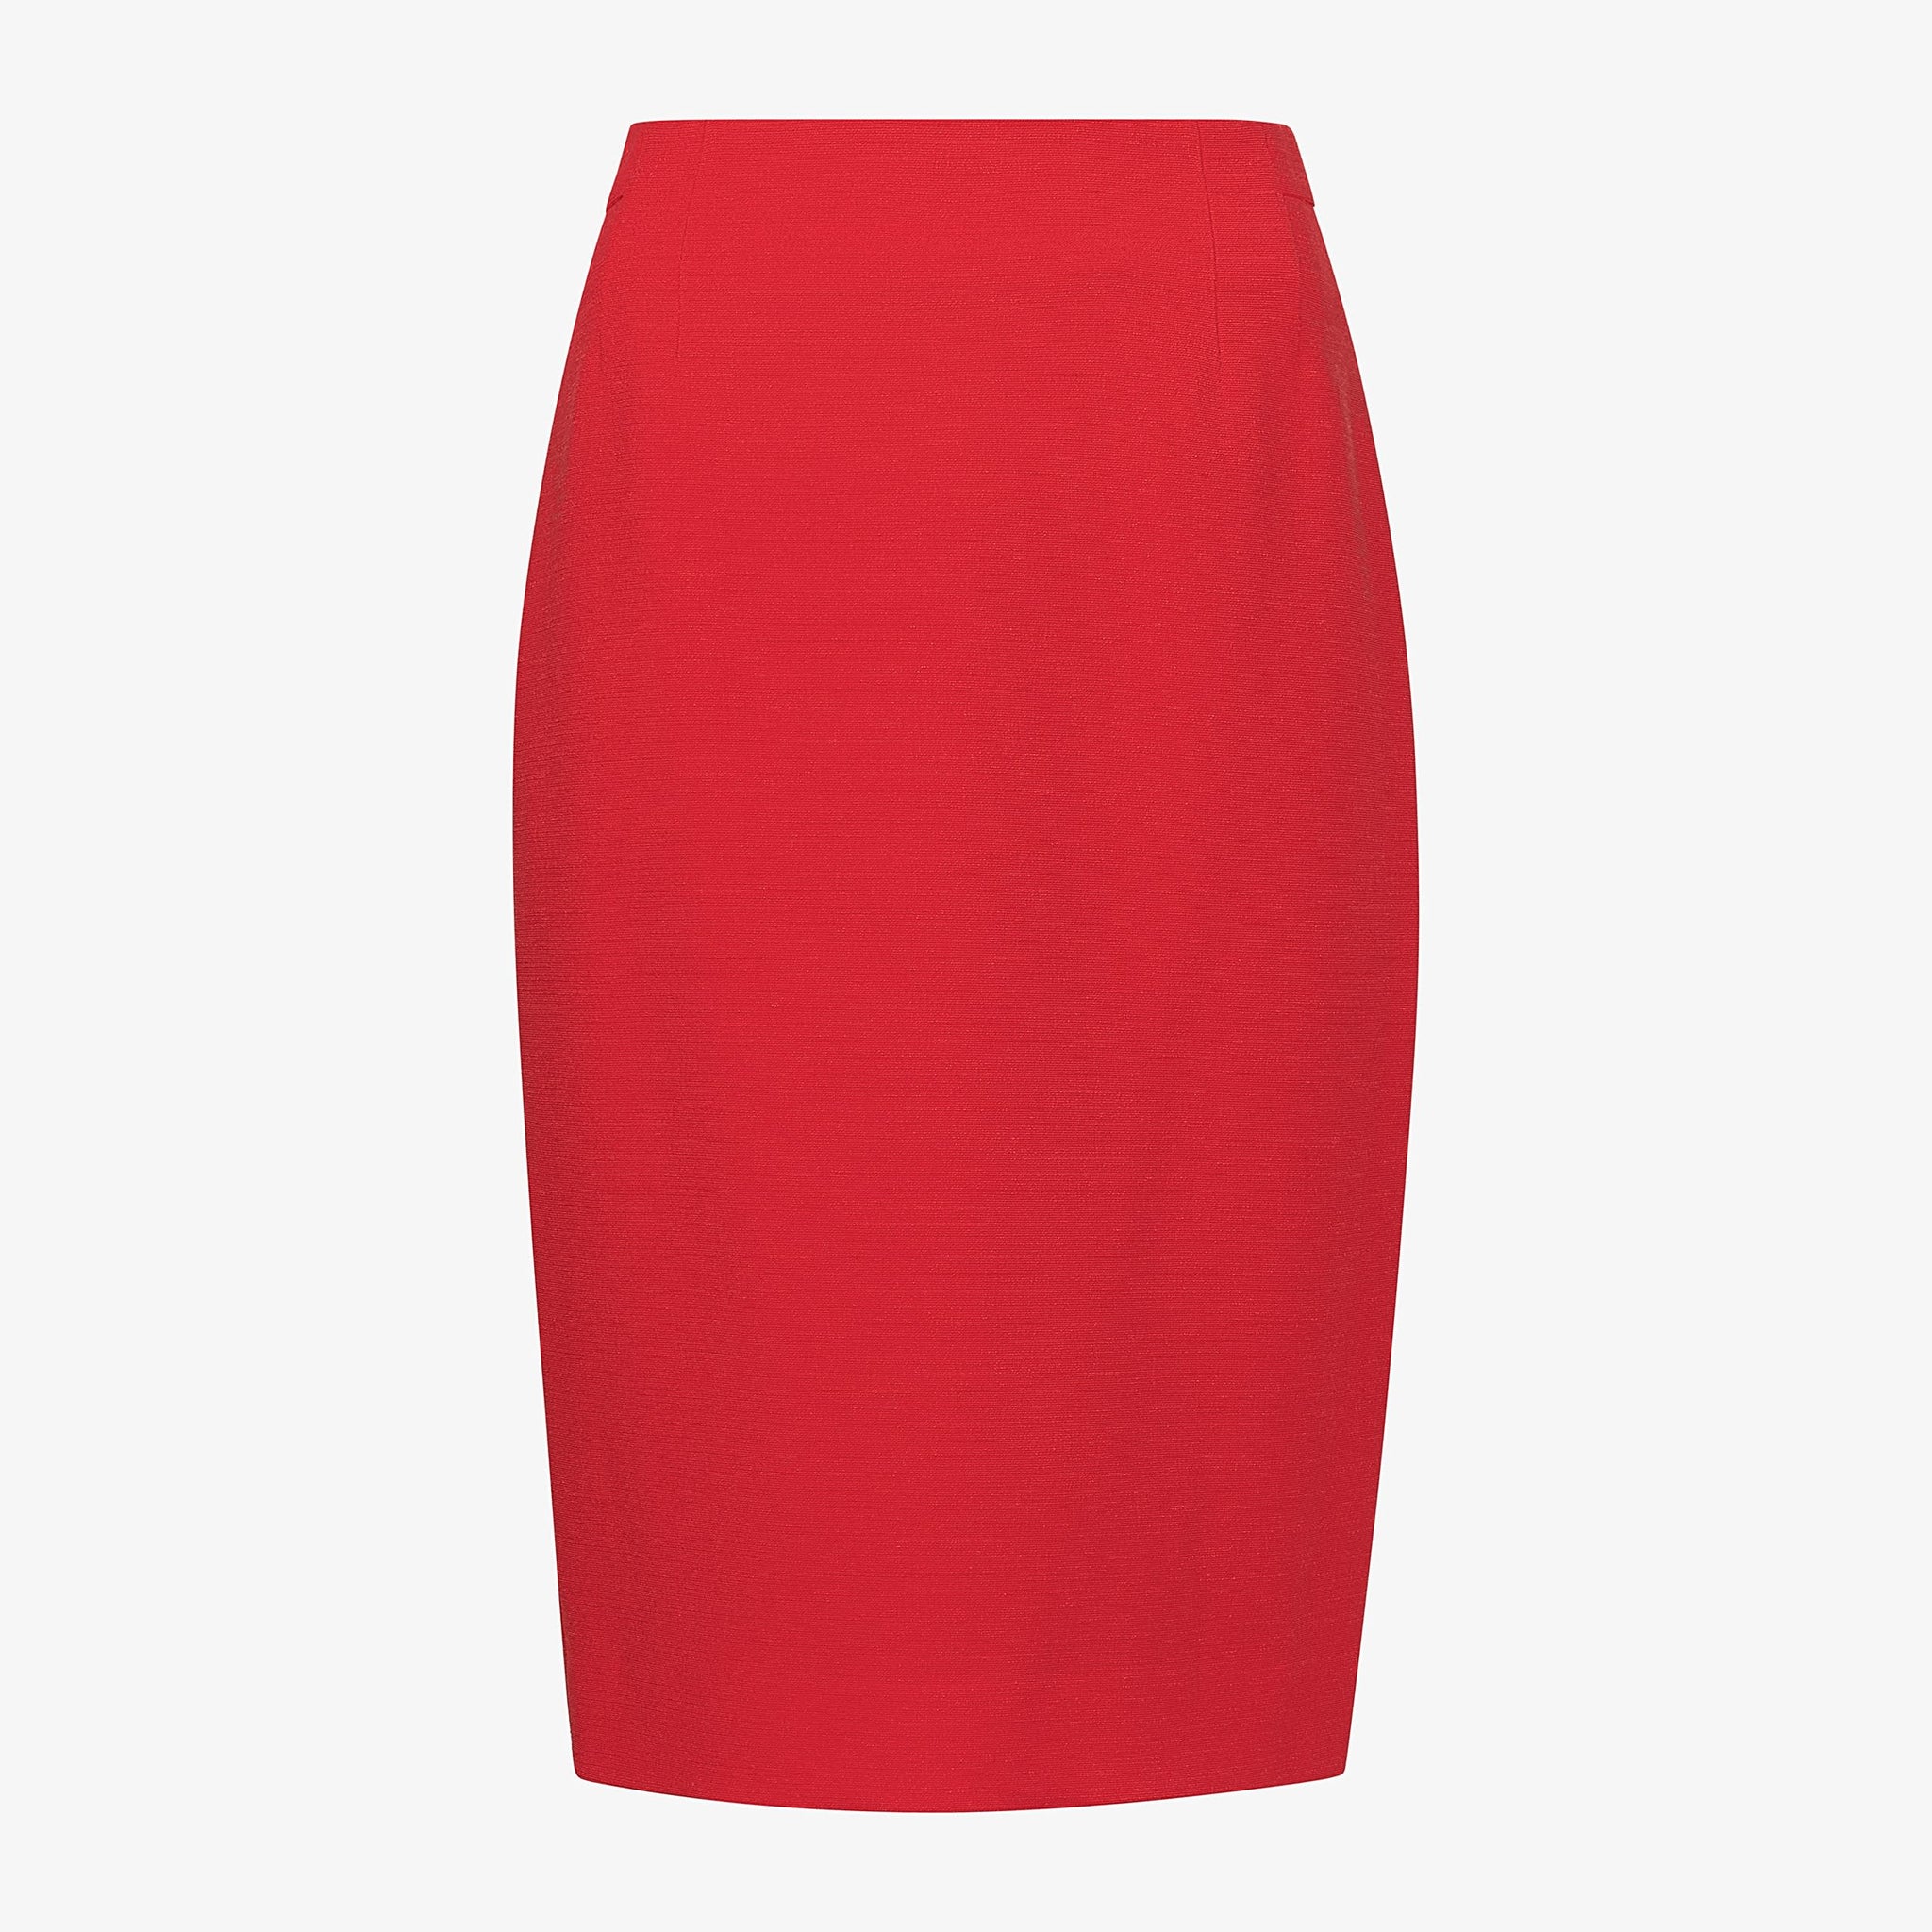 Packshot image of the Cobble Hill Skirt in Poppy